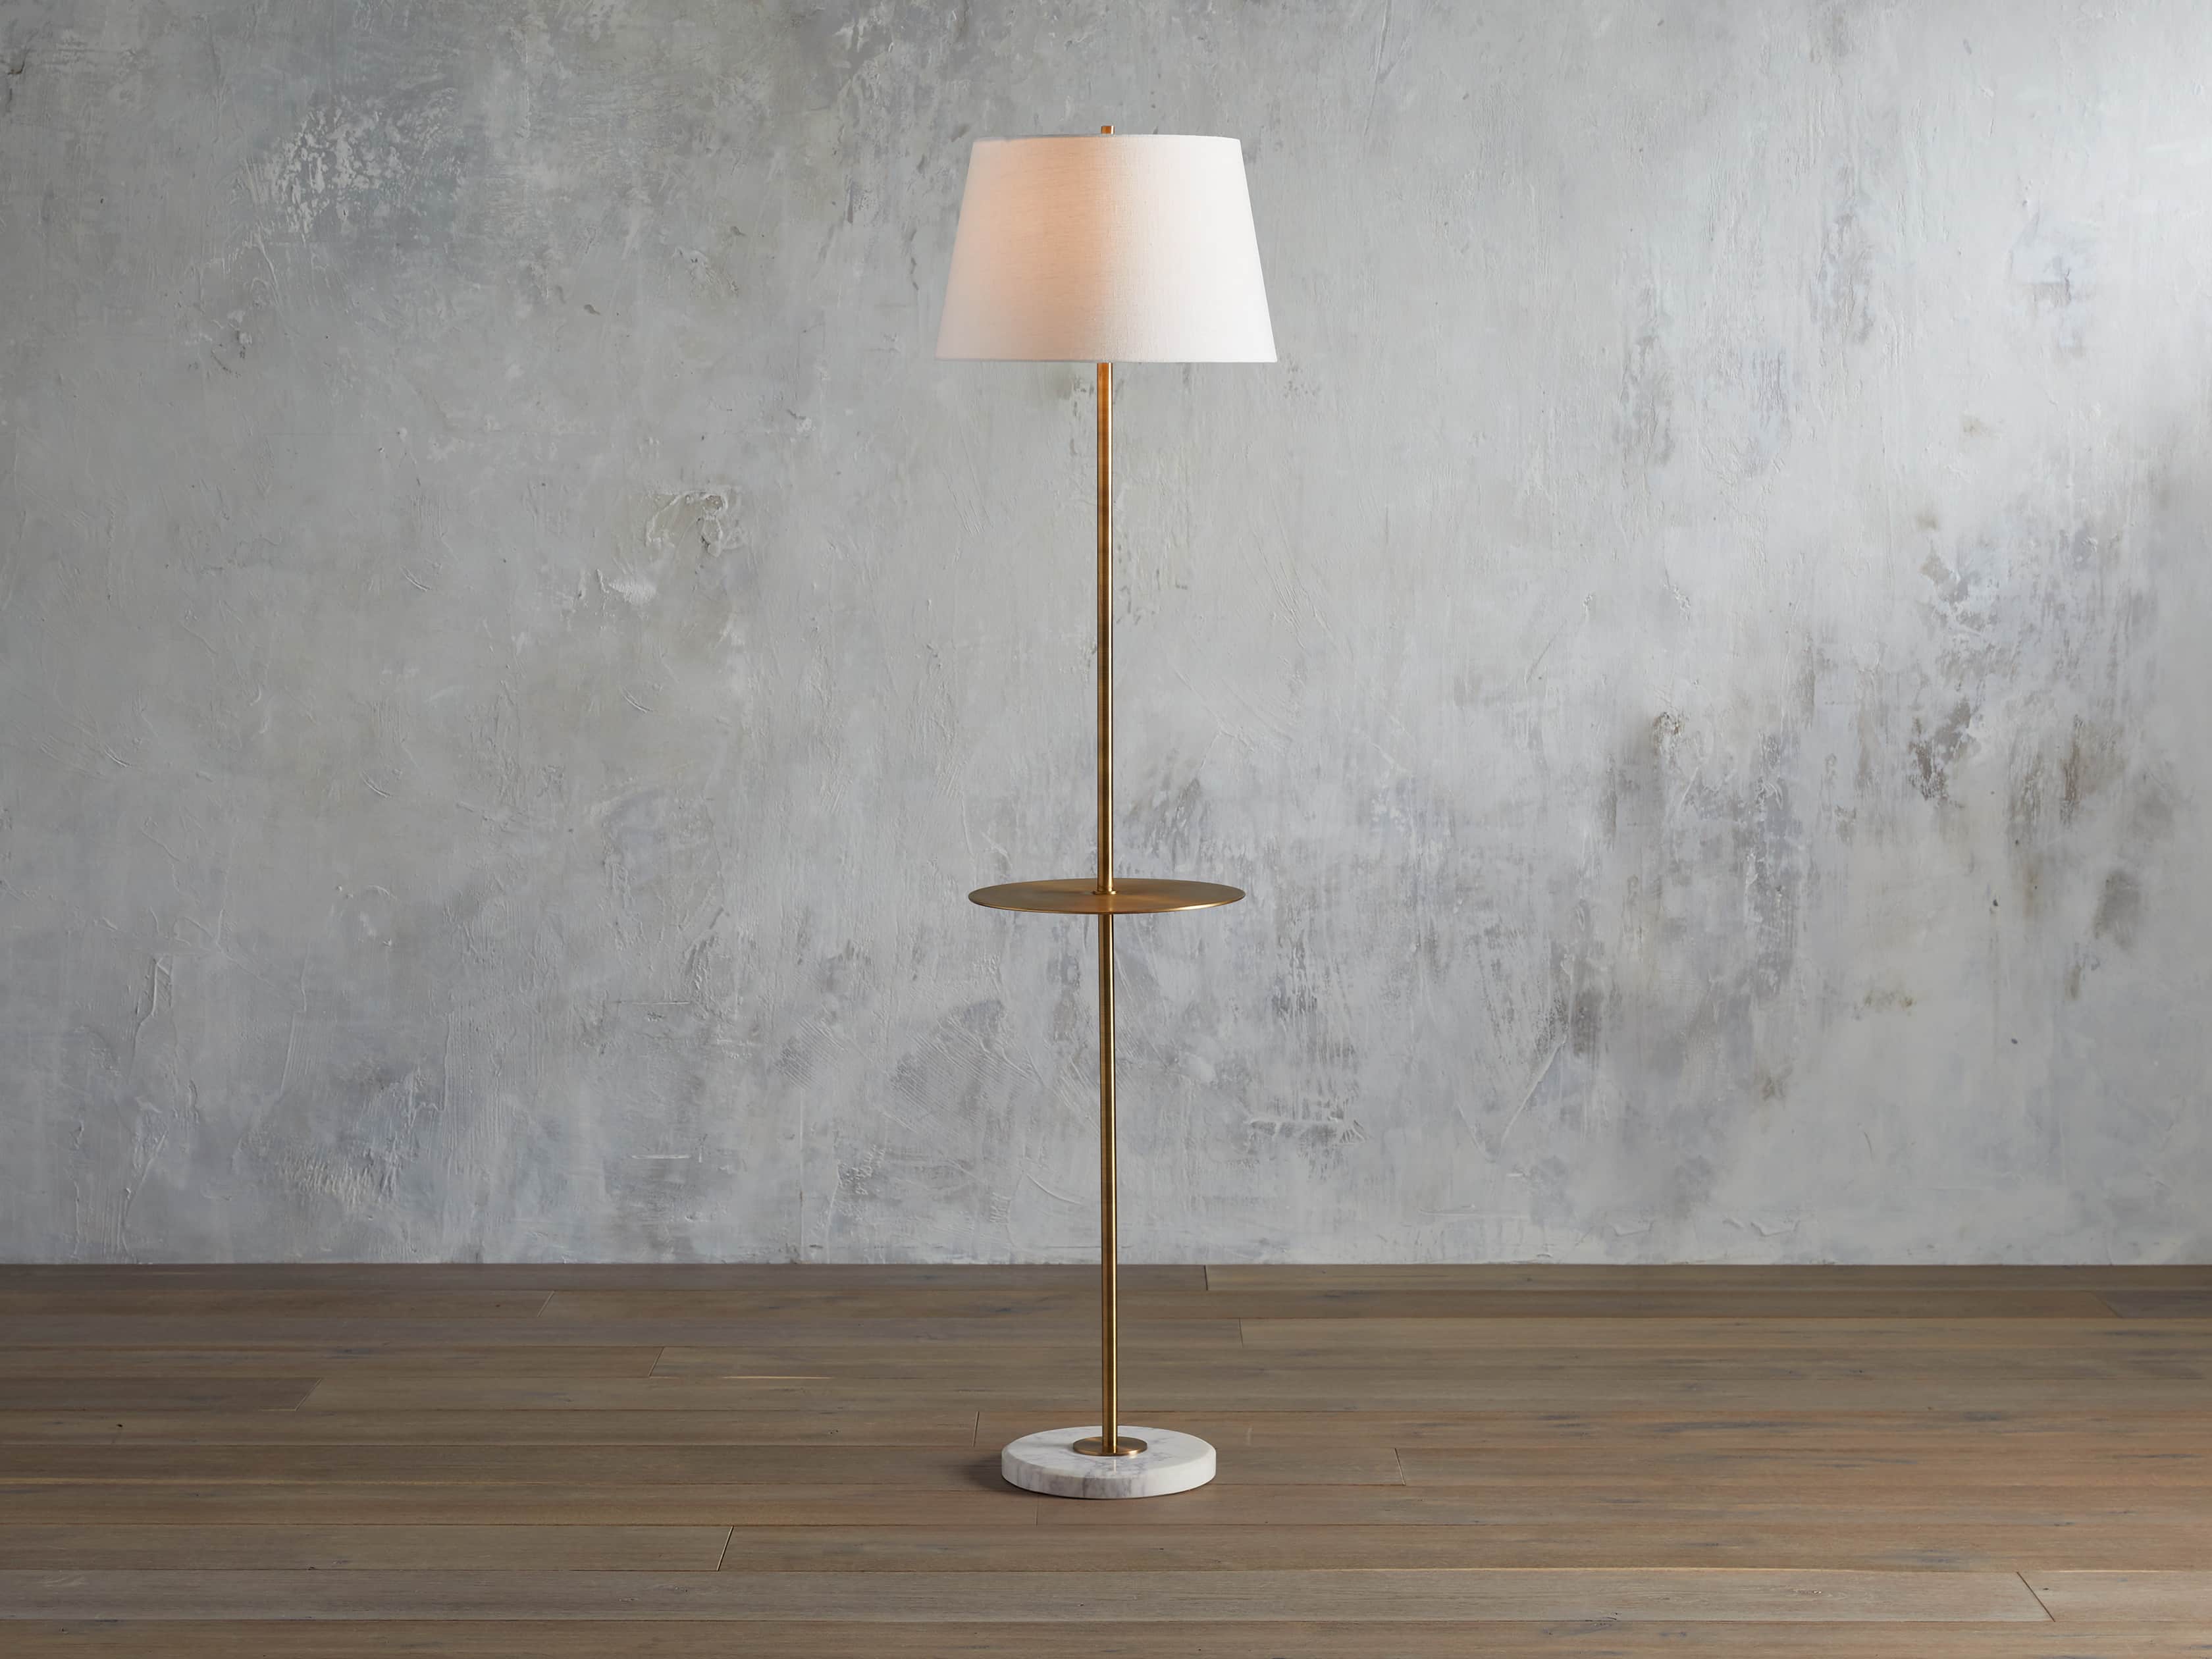 Kellen Antiqued Brass Floor Lamp